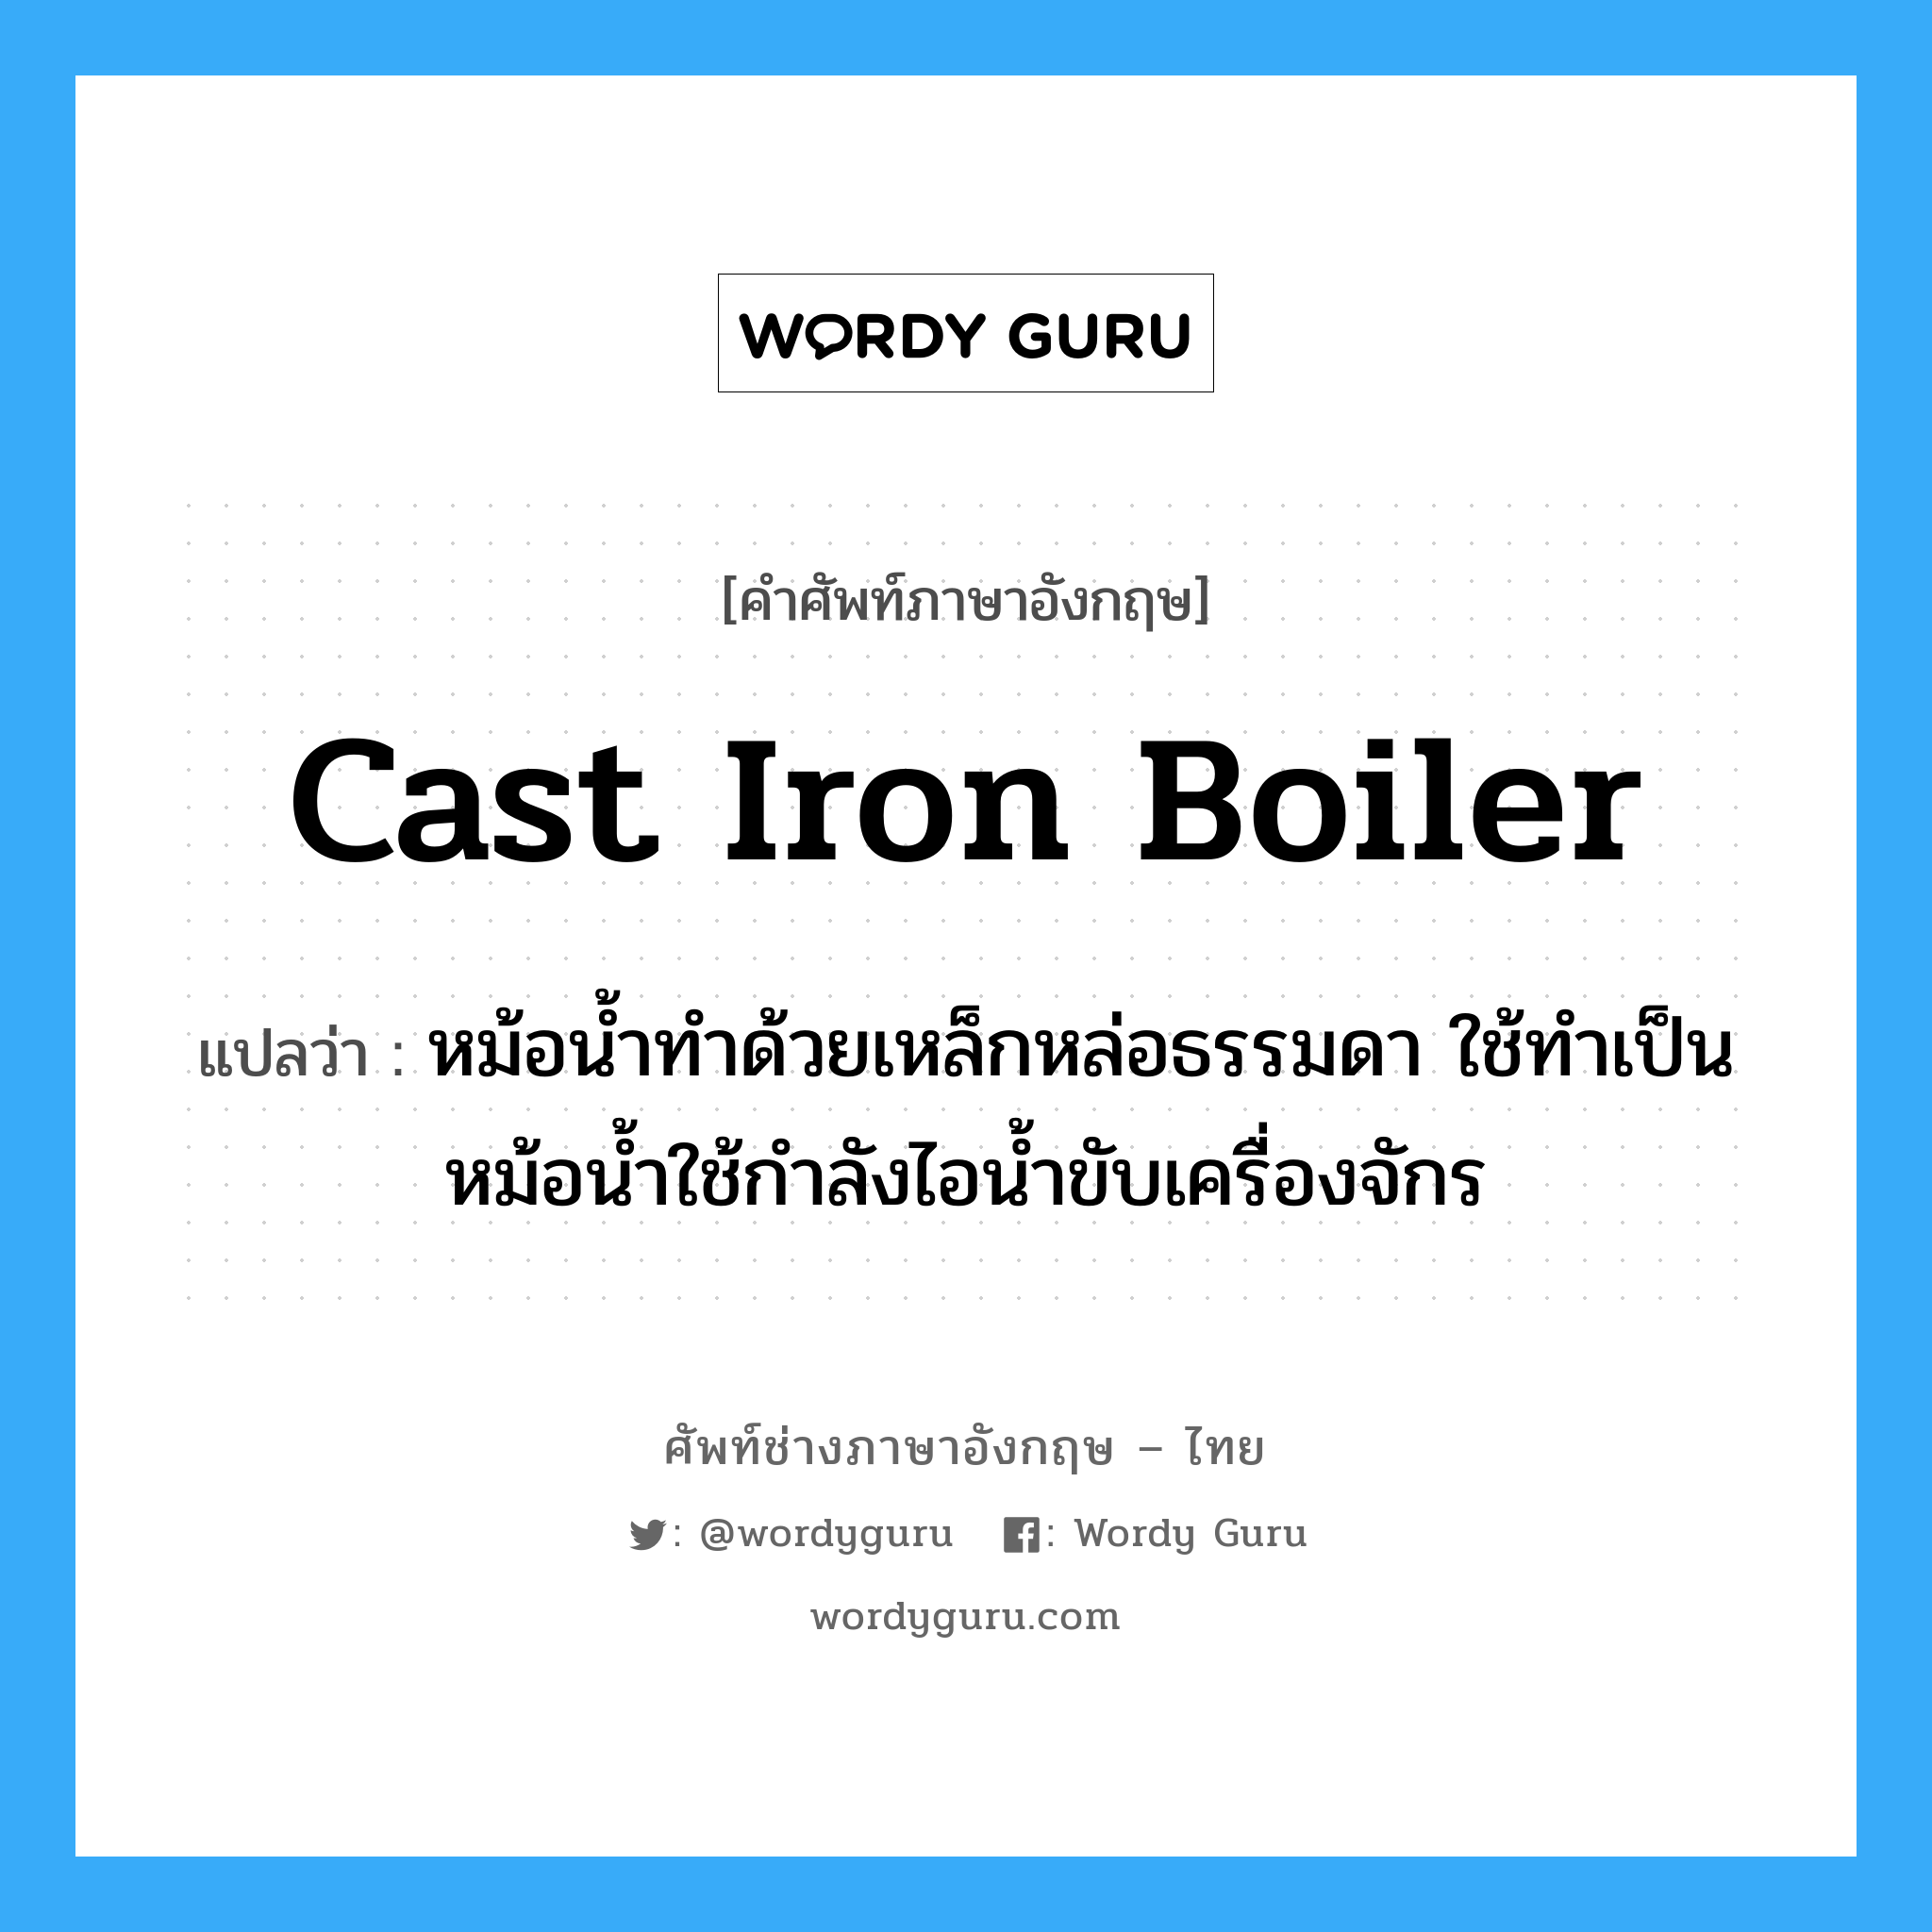 cast iron boiler แปลว่า?, คำศัพท์ช่างภาษาอังกฤษ - ไทย cast iron boiler คำศัพท์ภาษาอังกฤษ cast iron boiler แปลว่า หม้อน้ำทำด้วยเหล็กหล่อธรรมดา ใช้ทำเป็นหม้อน้ำใช้กำลังไอน้ำขับเครื่องจักร